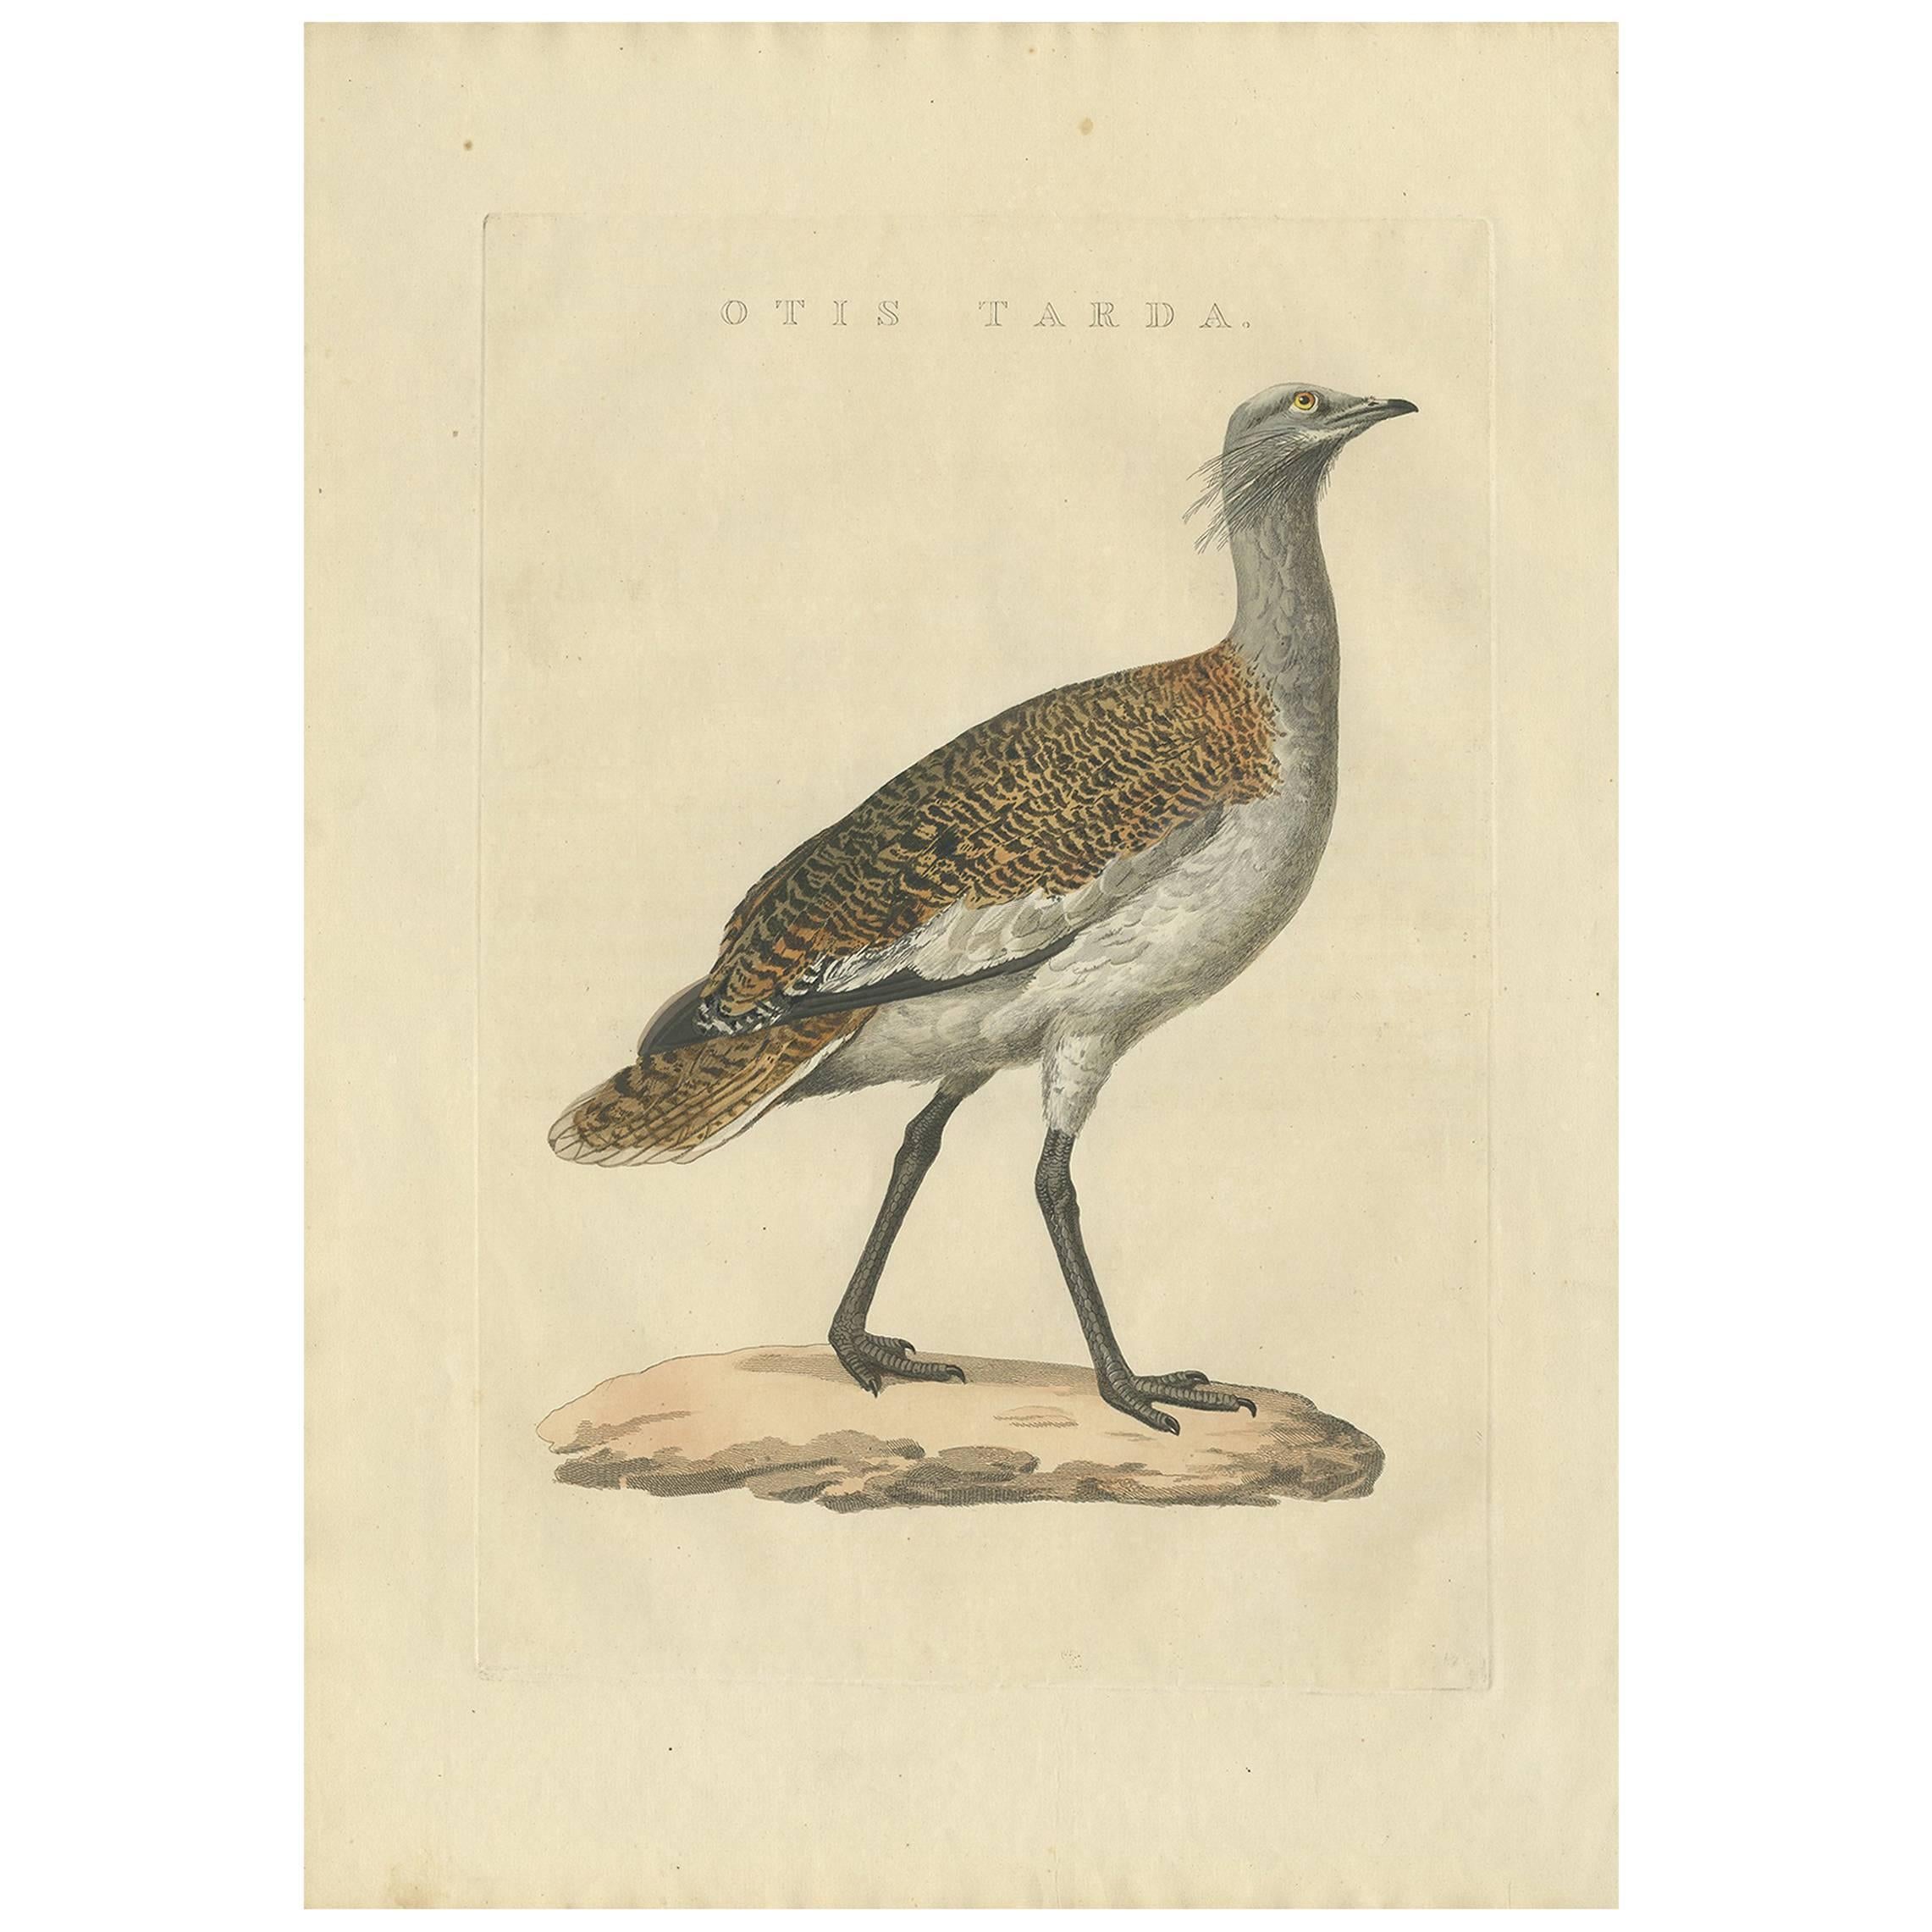 Antique Bird Print of the Great Bustard by Sepp & Nozeman, 1829